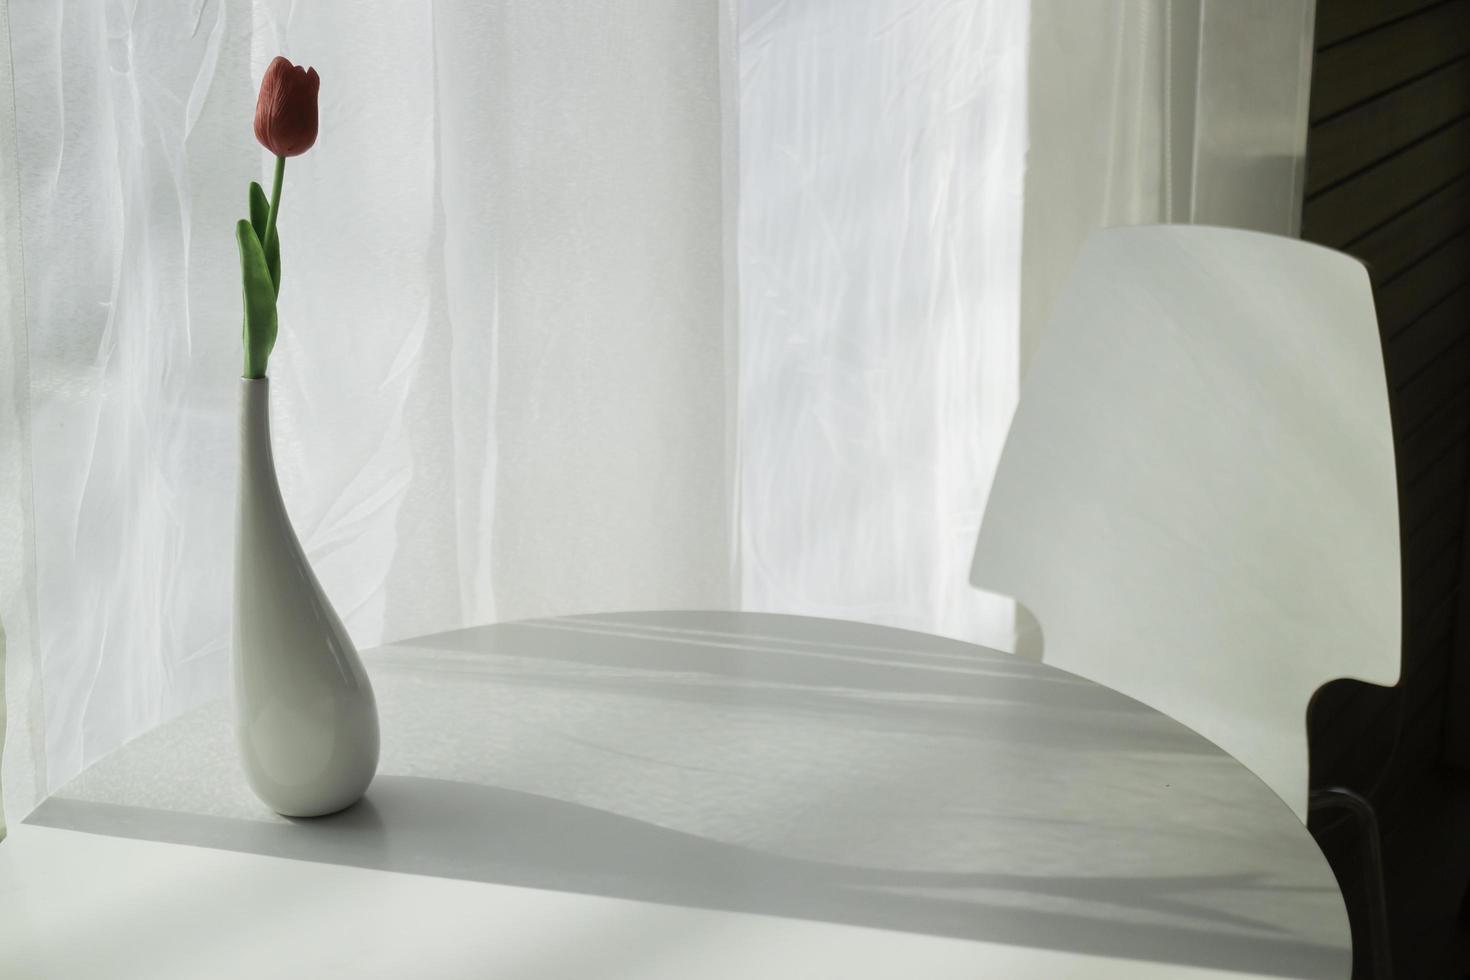 vaso de flores com luz forte da janela foto